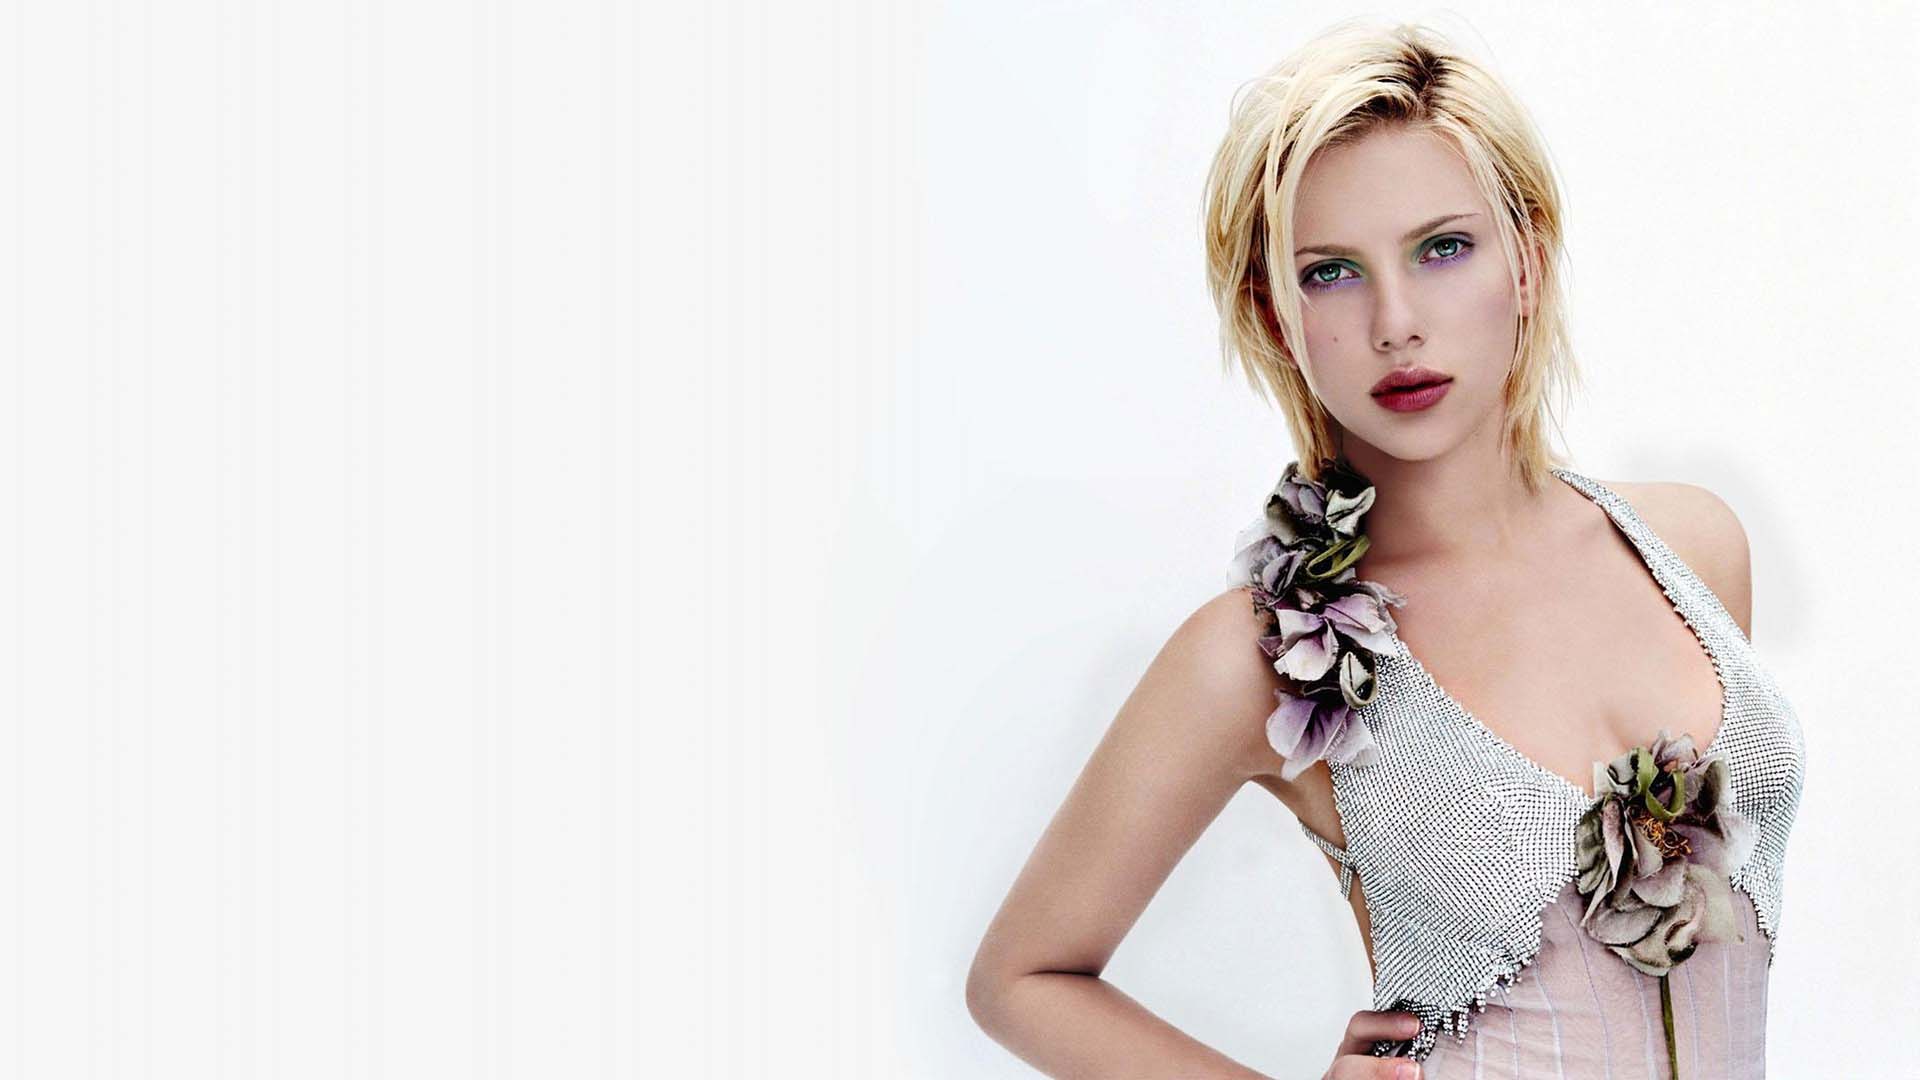 Scarlett Johansson Wallpaper